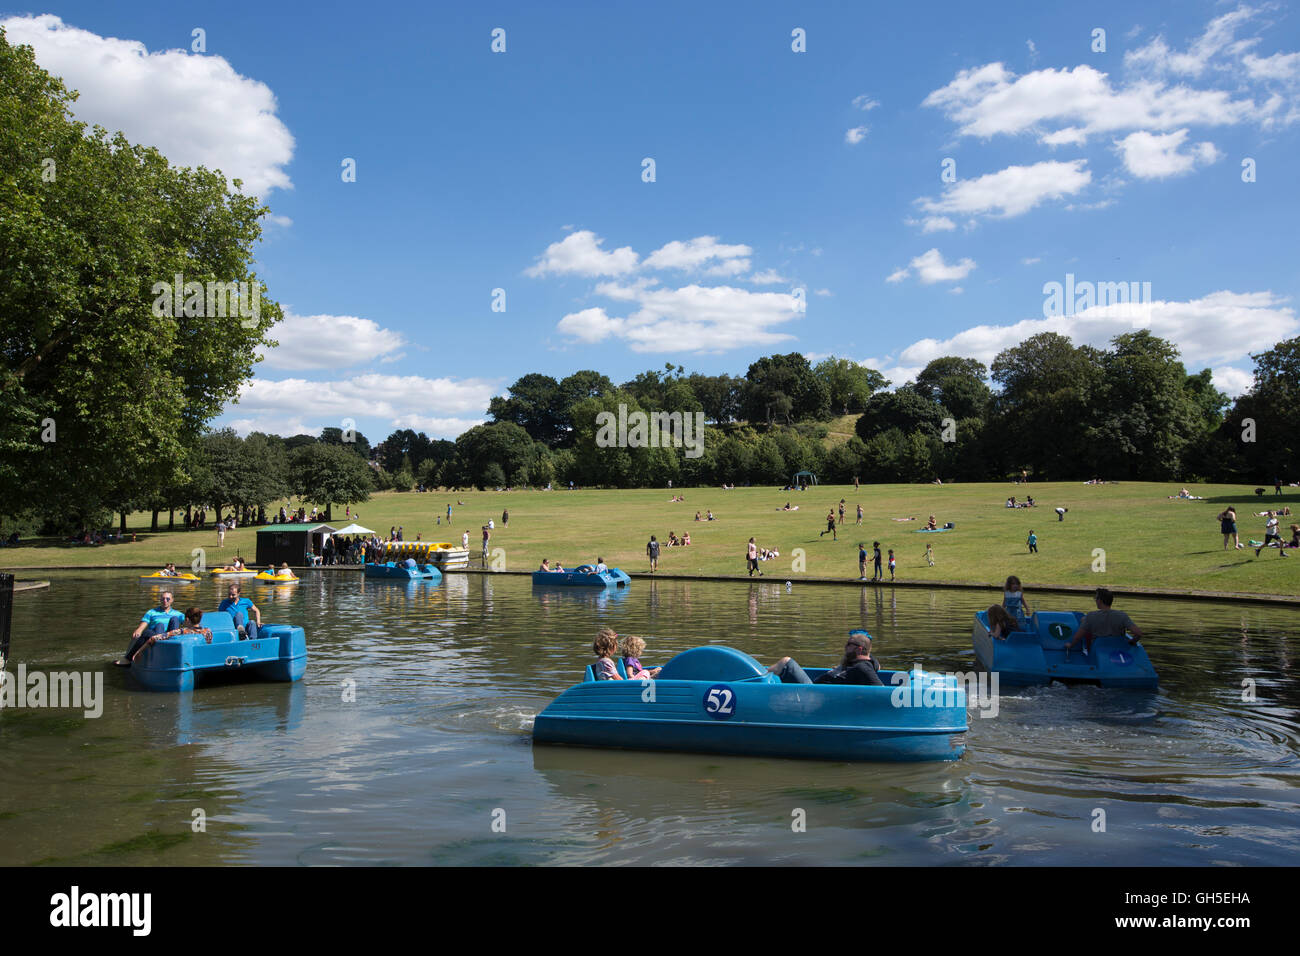 Le persone che si godono la calda estate meteo in Greenwich Park, a sud-est di Londra, Inghilterra, Regno Unito Foto Stock